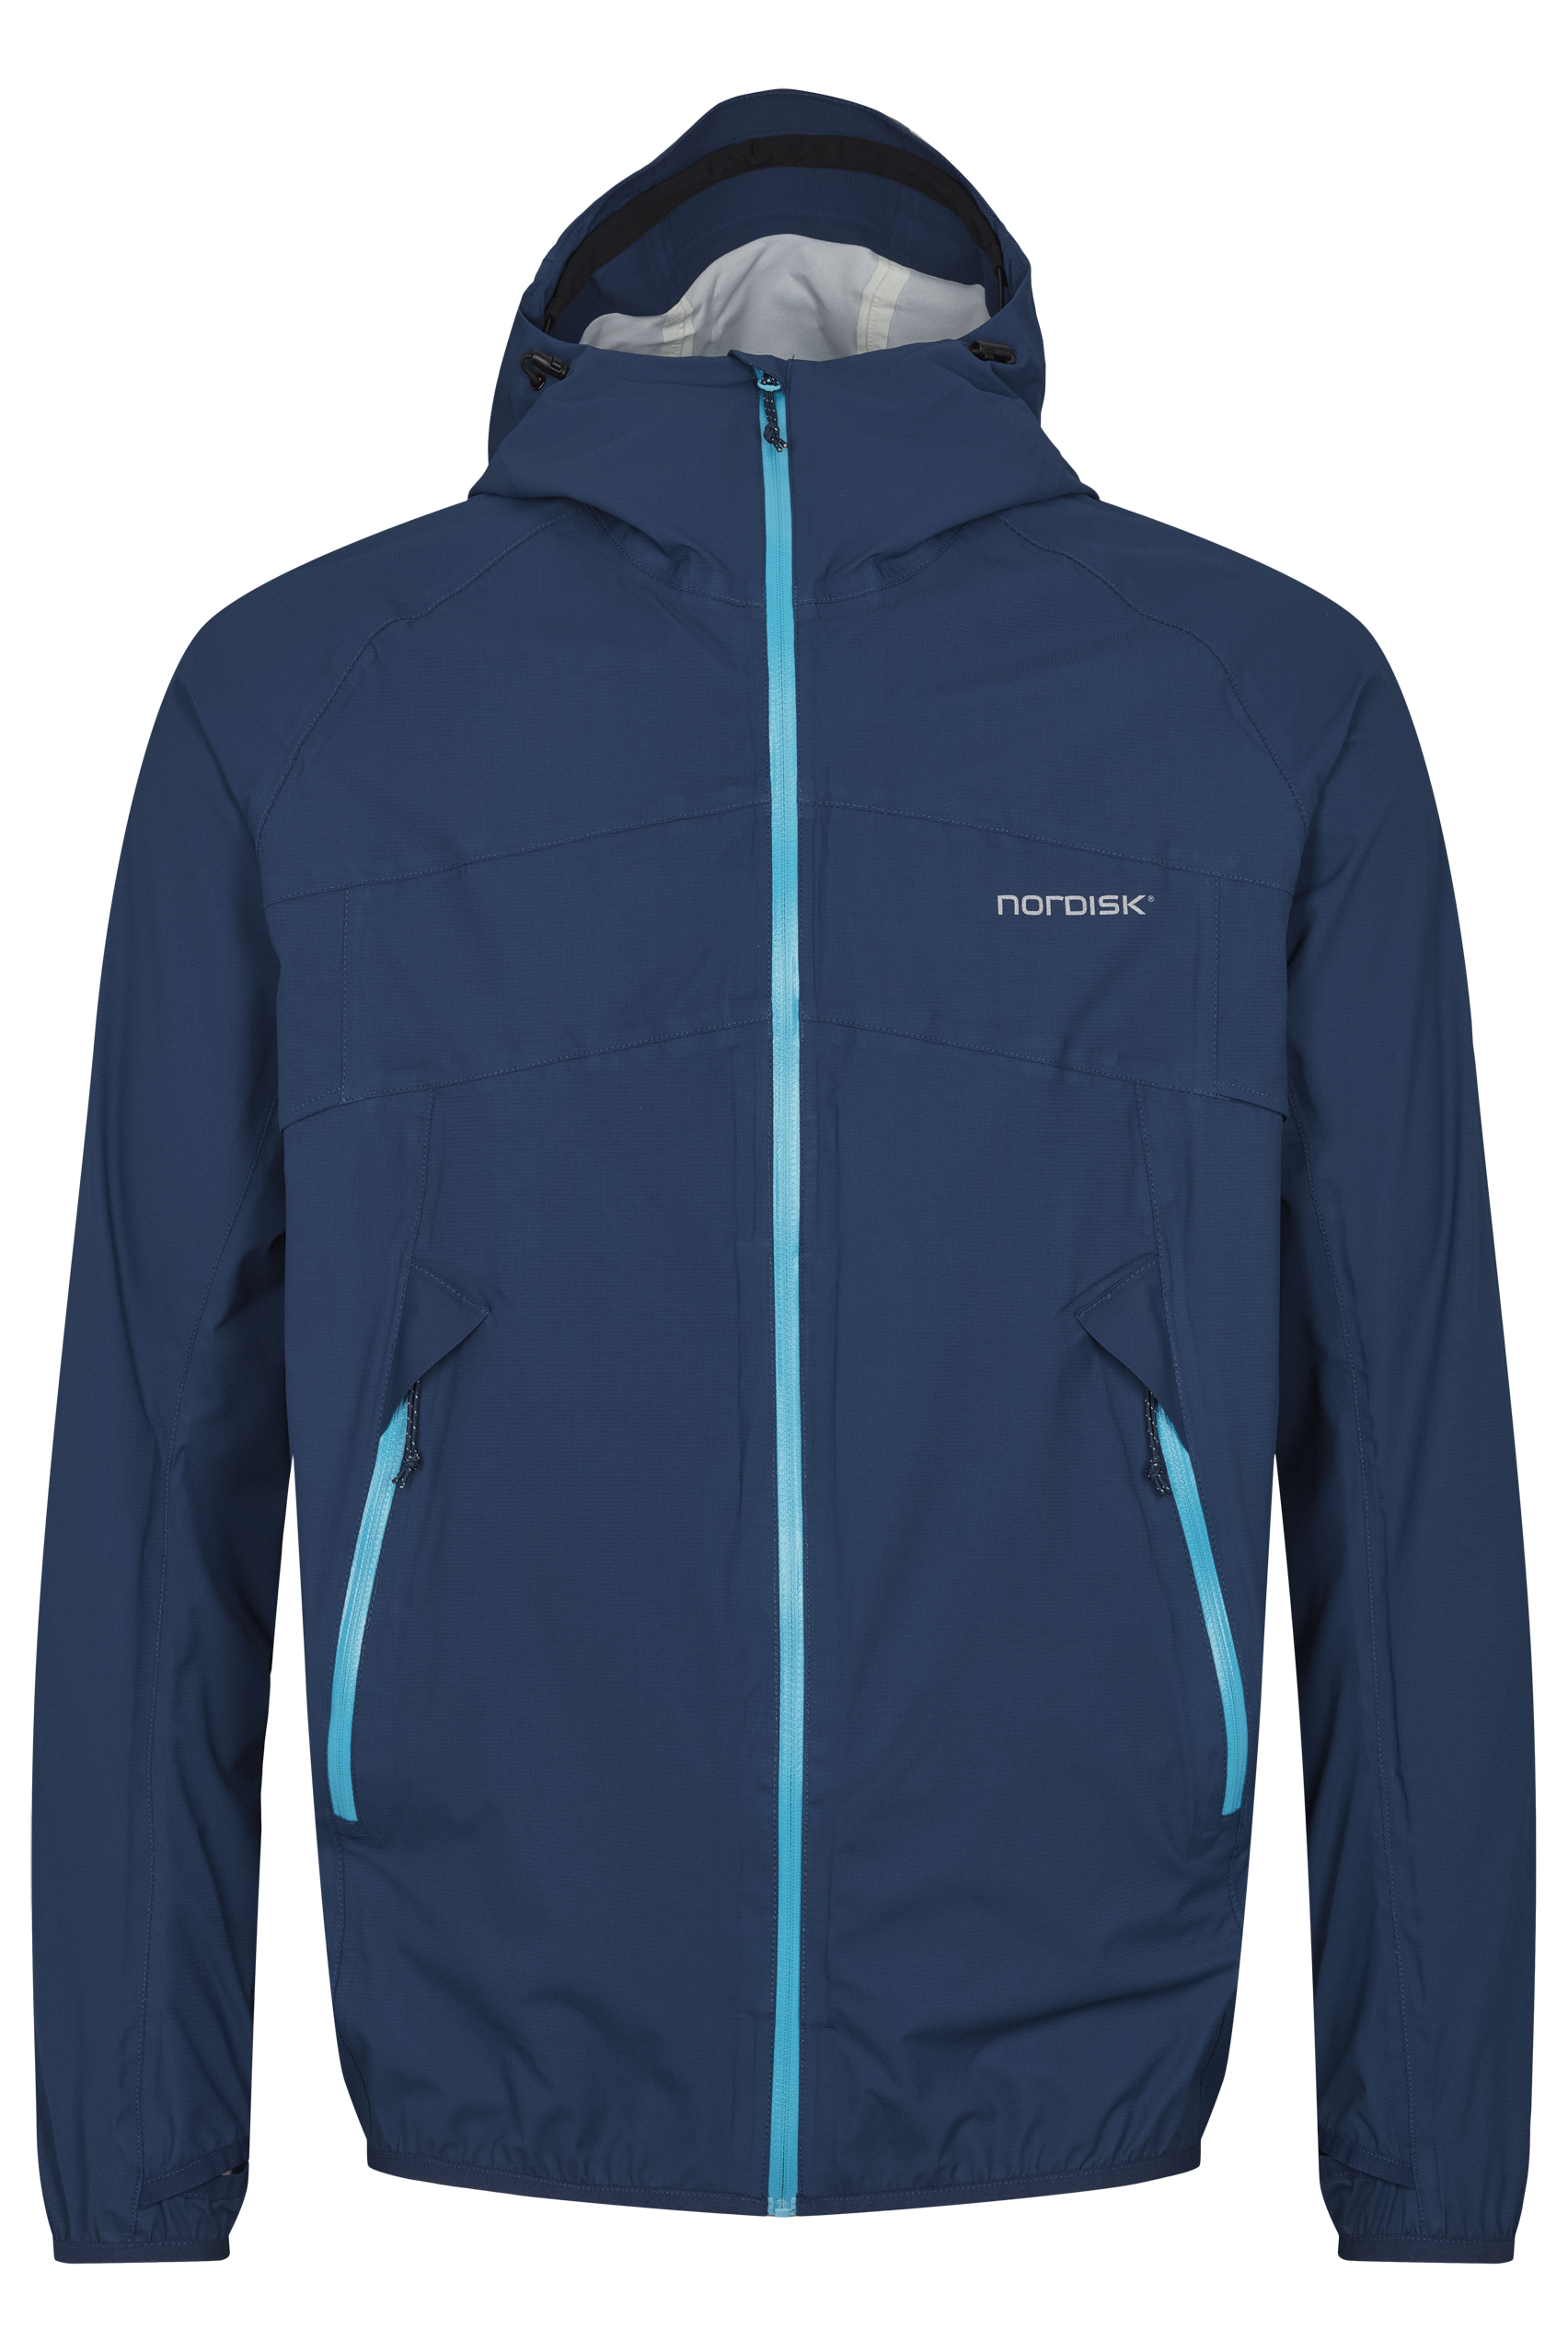 Nordisk Men’s Medby Ultralight 3-Layer Jacket Estate Blue